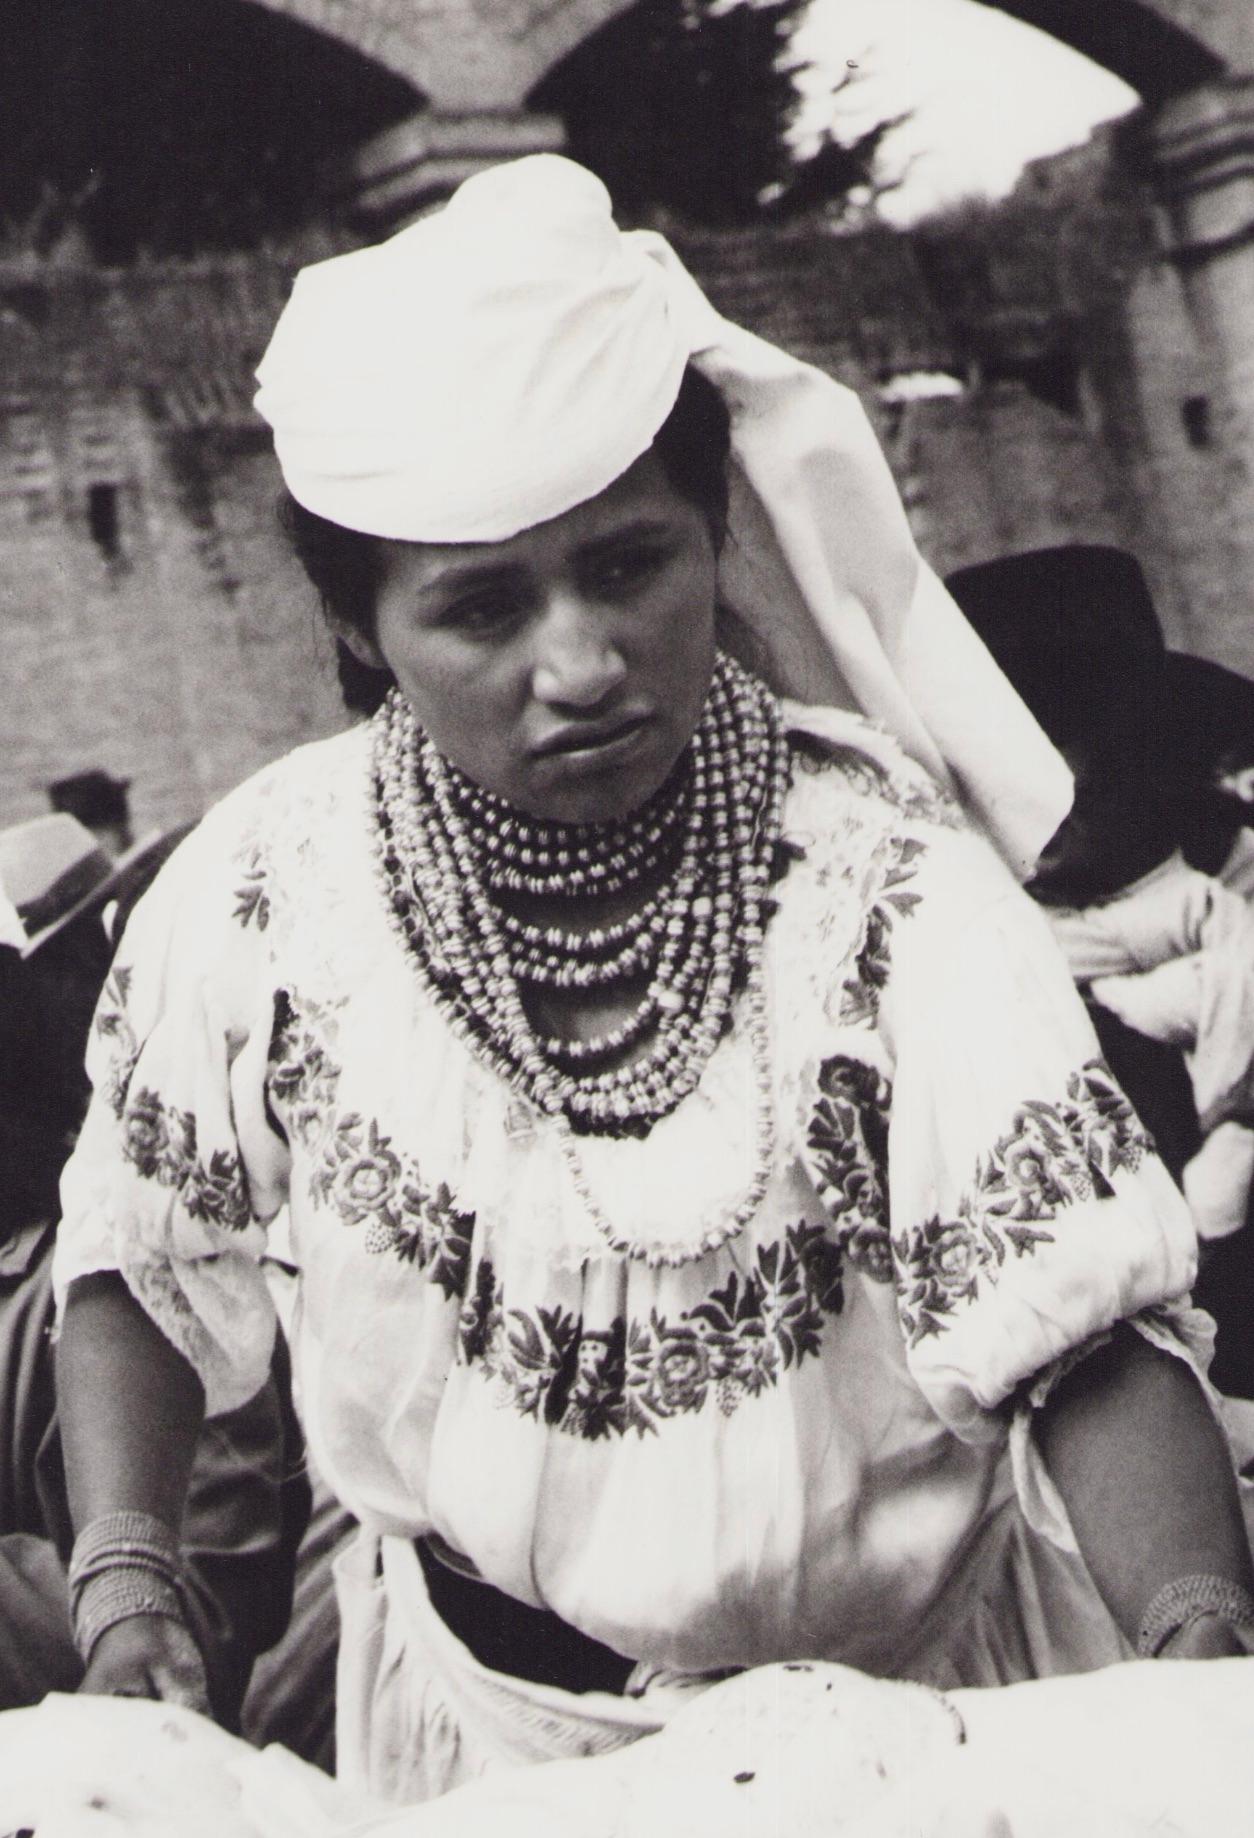 Ecuador, Frau, Markt, Schwarz-Weiß-Fotografie, 1960er Jahre, 28,2 x 23,1 cm – Photograph von Hanna Seidel